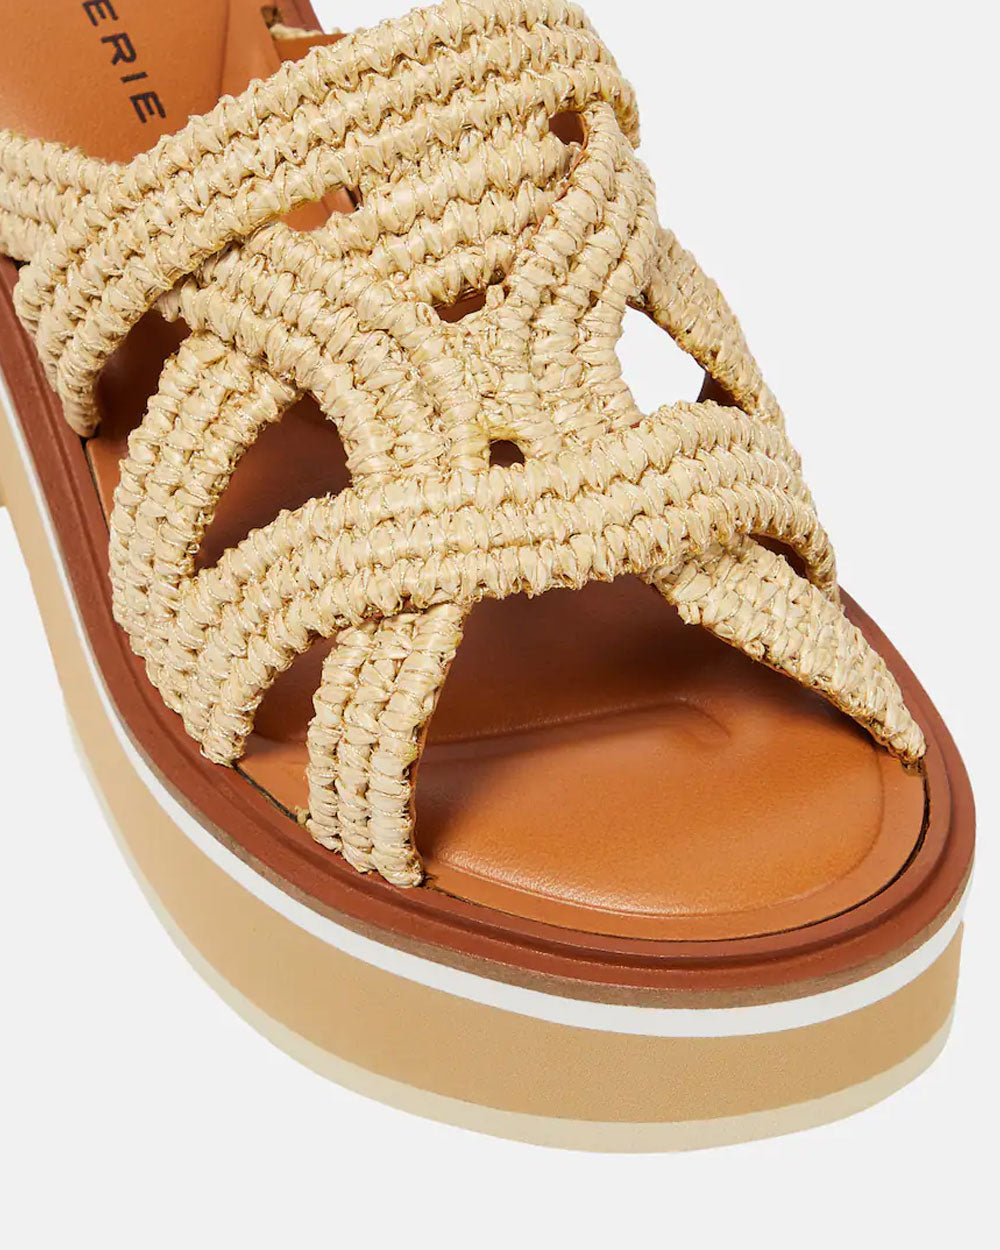 Chermy Slip On Platform Sandals in Natural Raffia